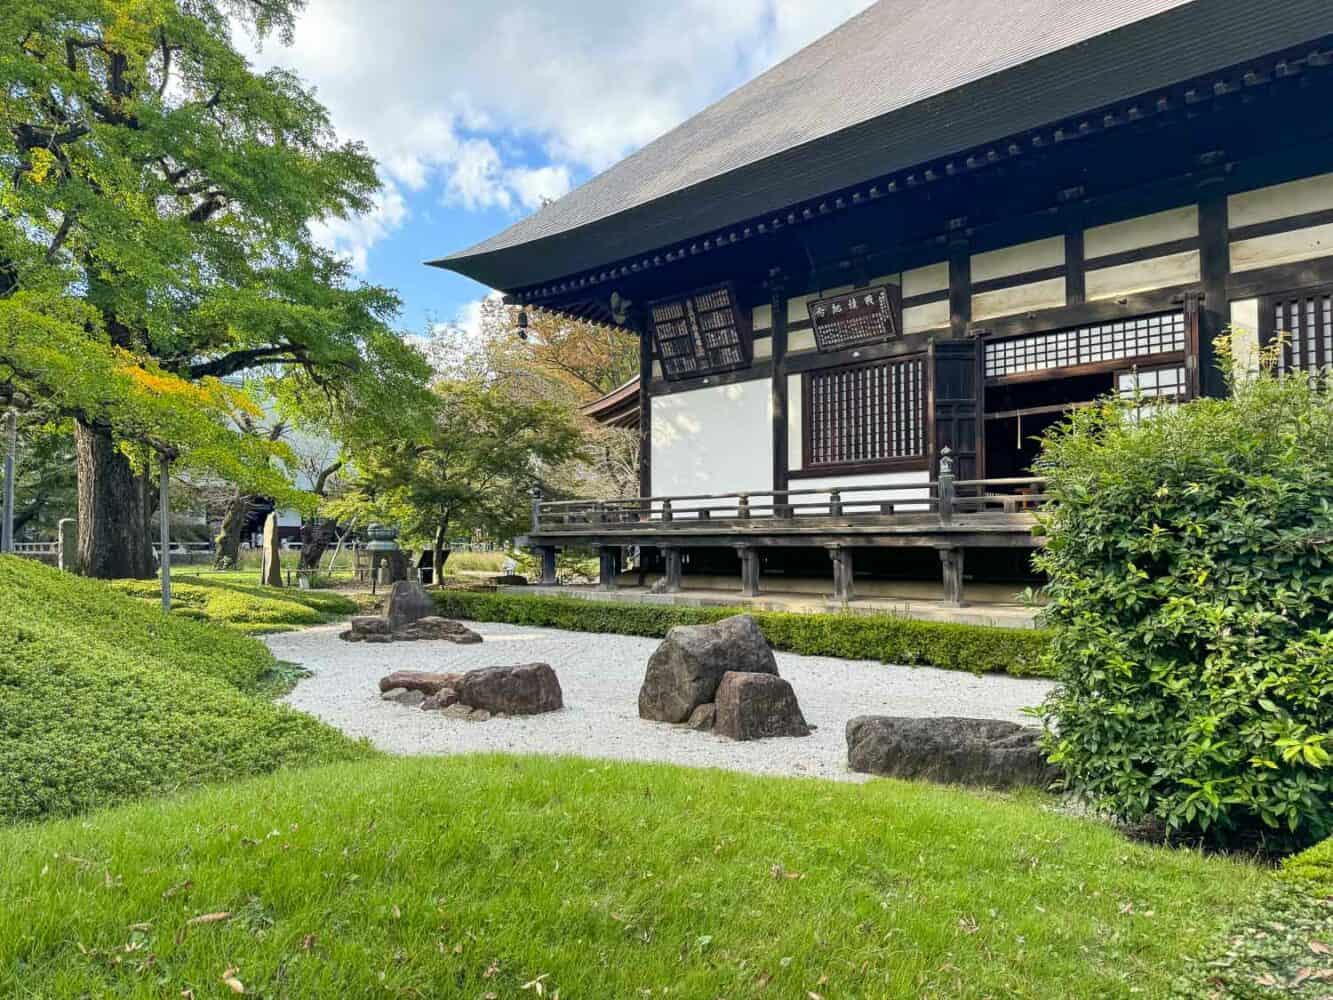 Rock garden at Jōshinji Temple in Jiyugaoka in Tokyo